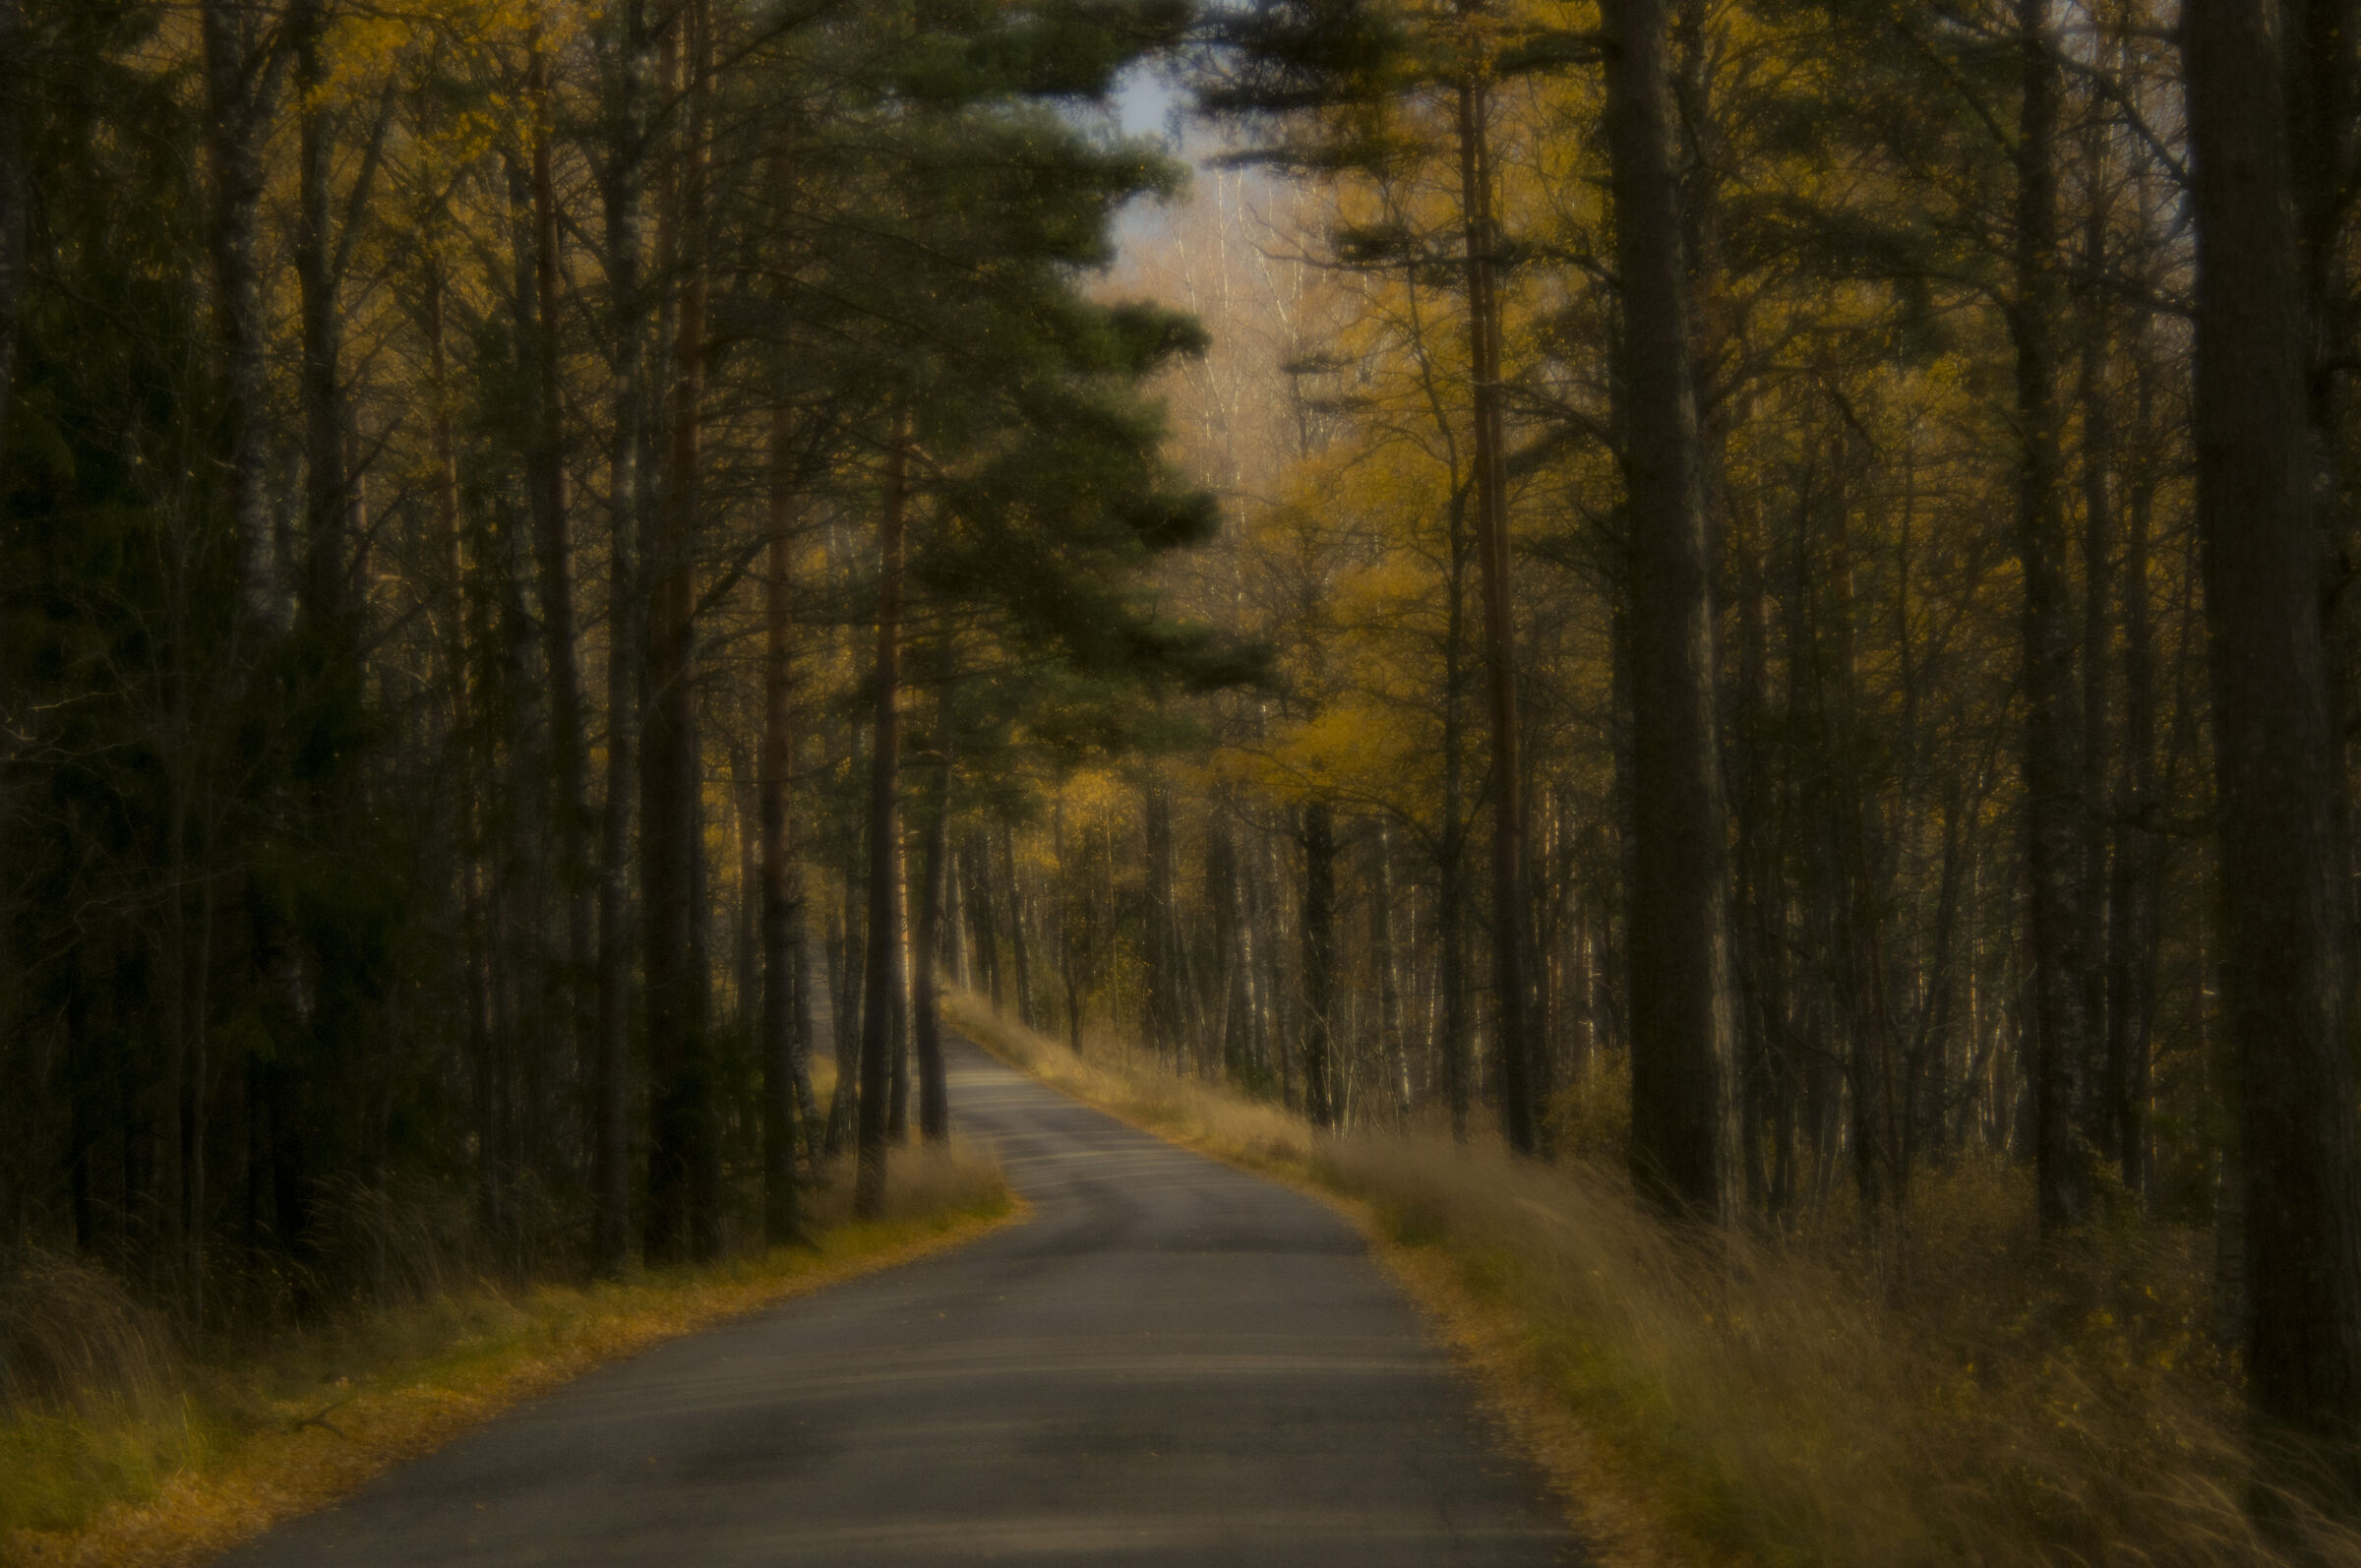 Autumn road...